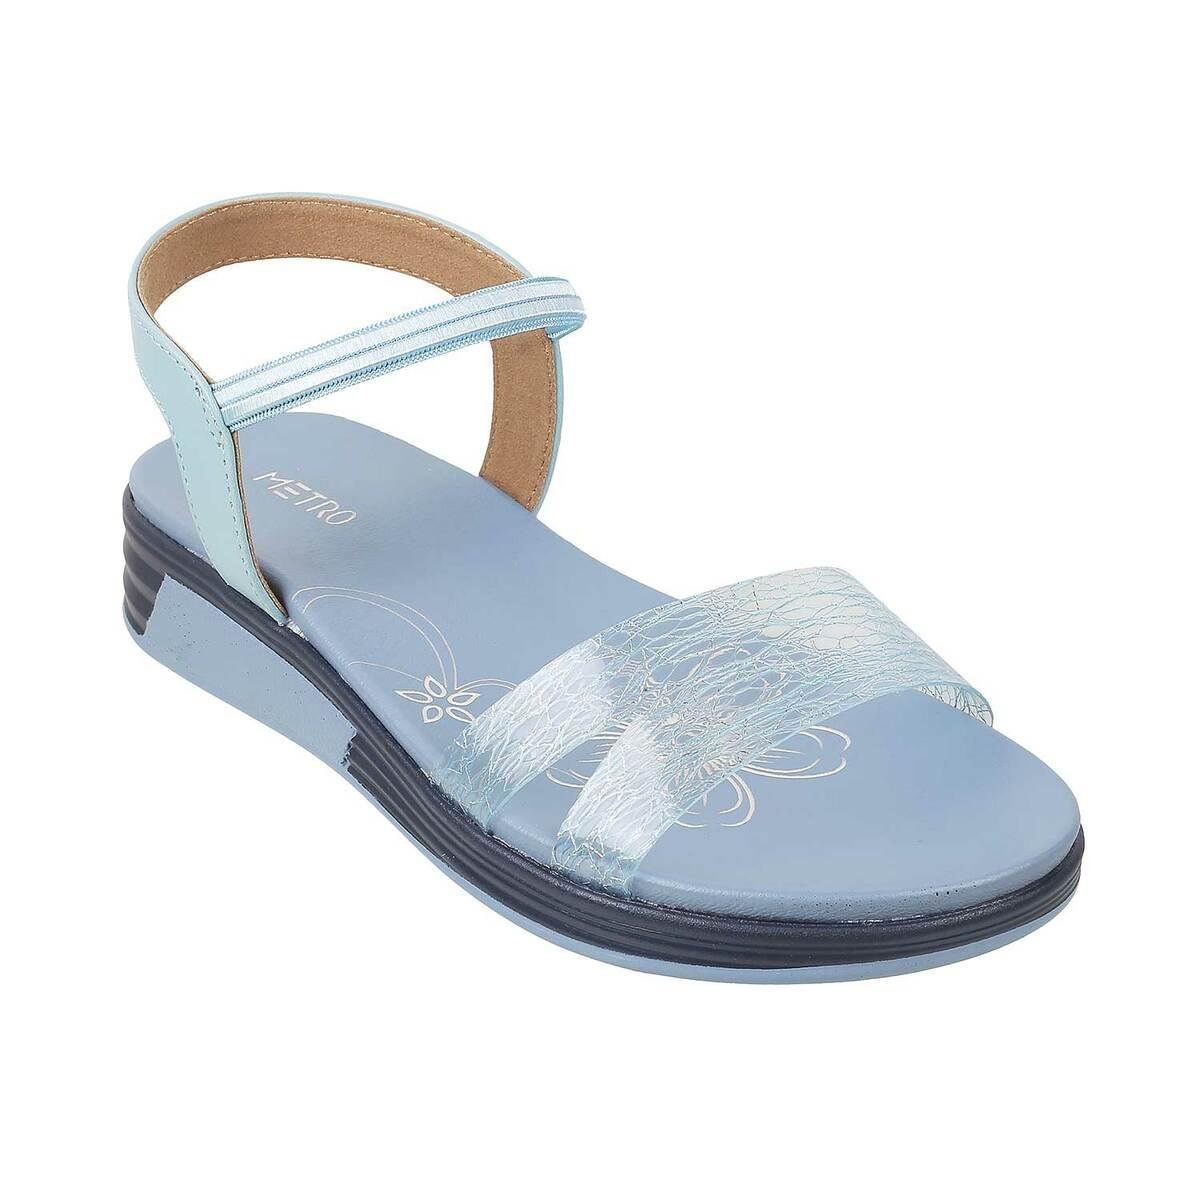 Buy Women Beige Casual Sandals Online | SKU: 33-476-20-36-Metro Shoes